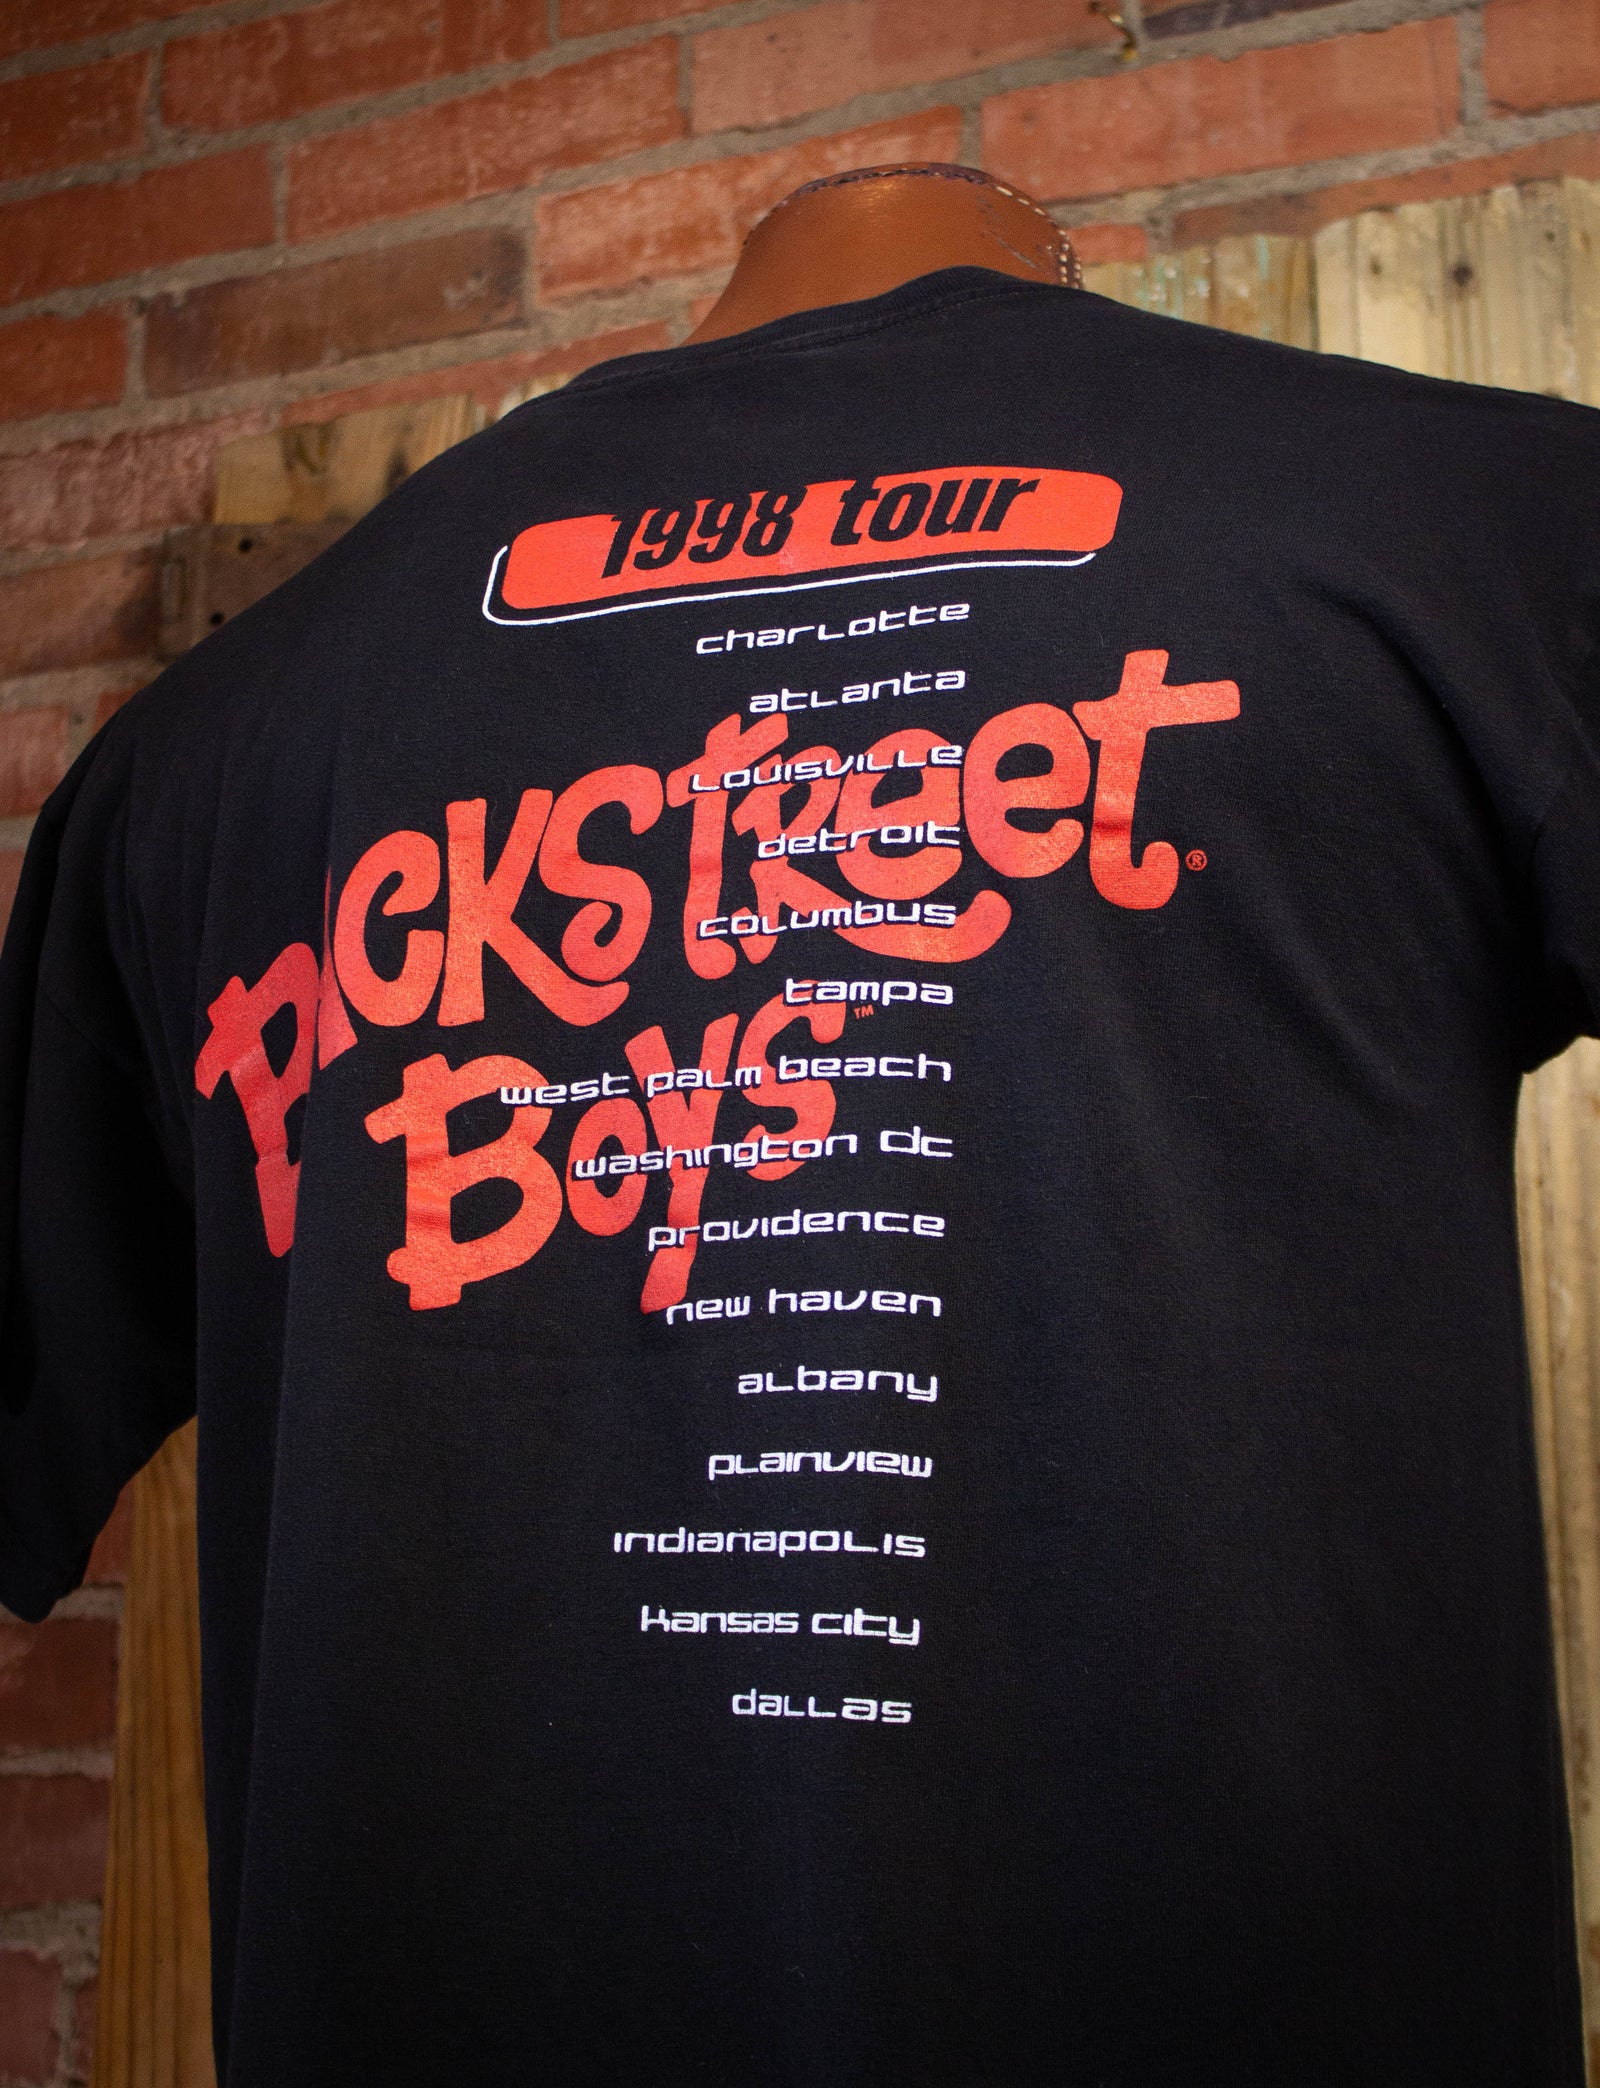 Backstreet Boys vintage tee 1998-